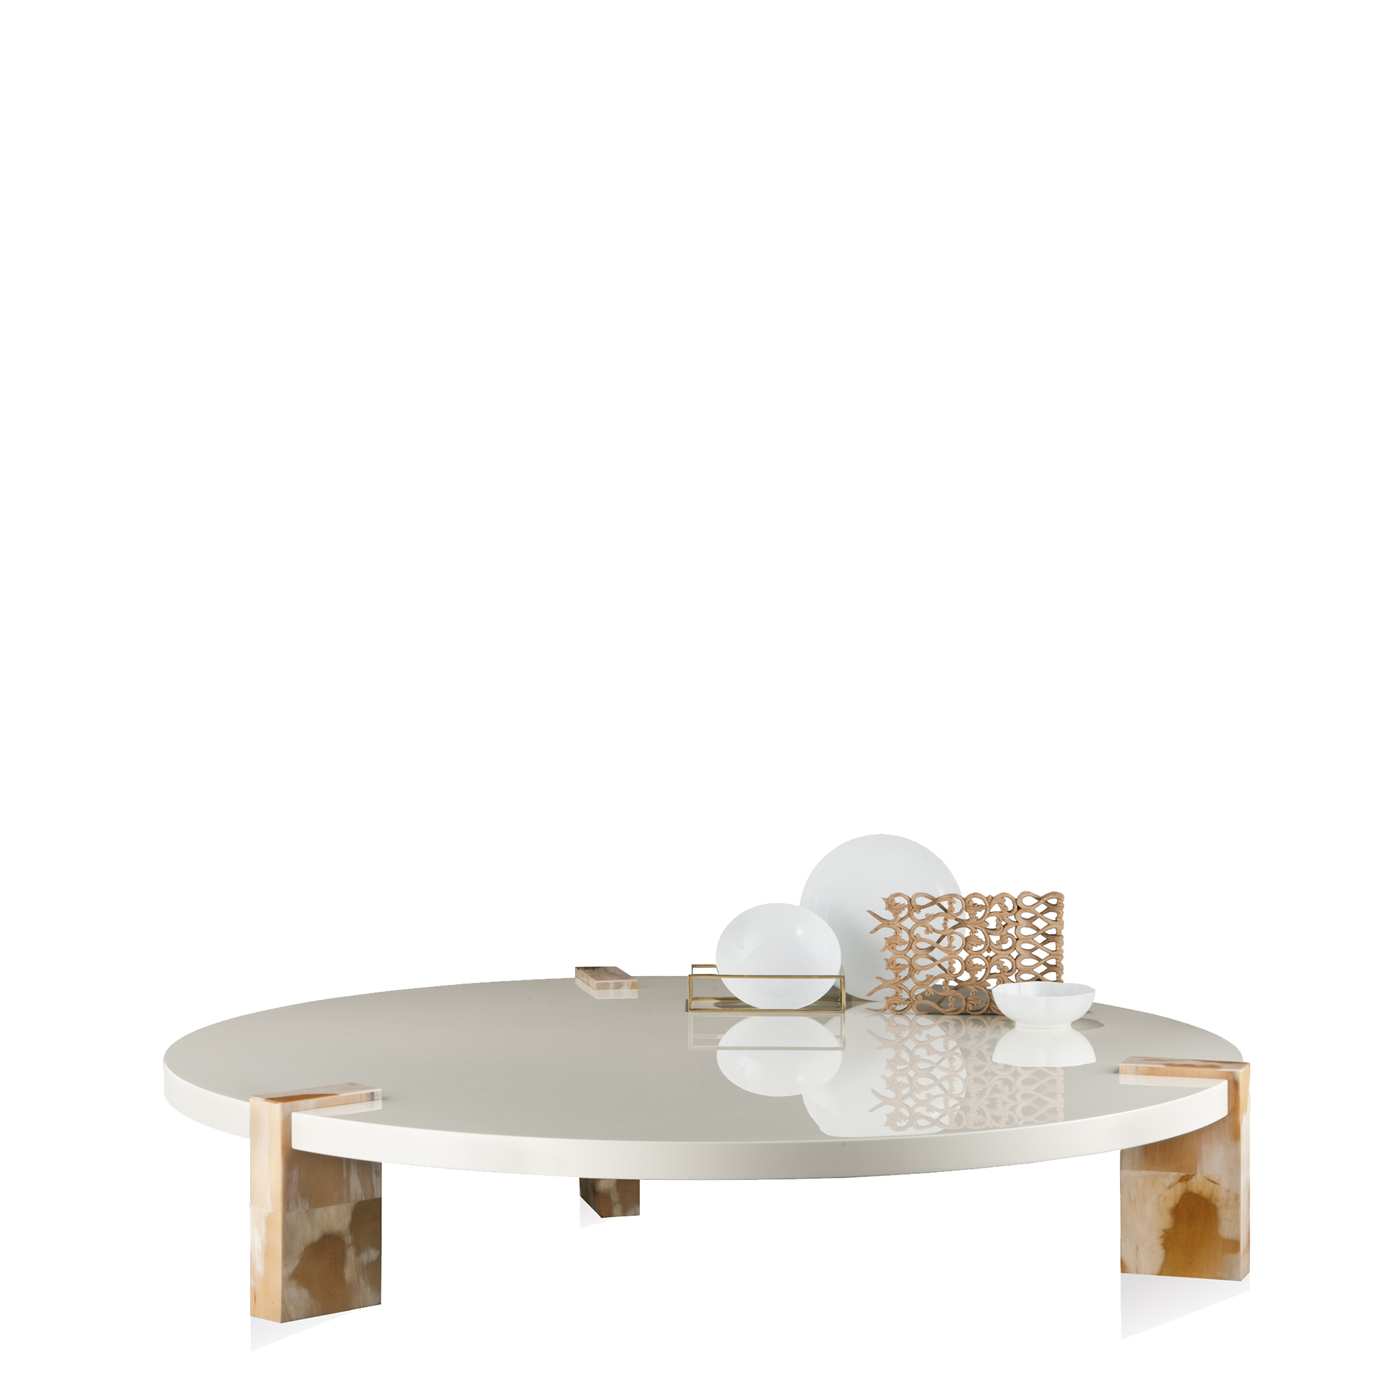 Tavoli e consolle - Paestum tavolo basso in legno laccato avorio - Arcahorn